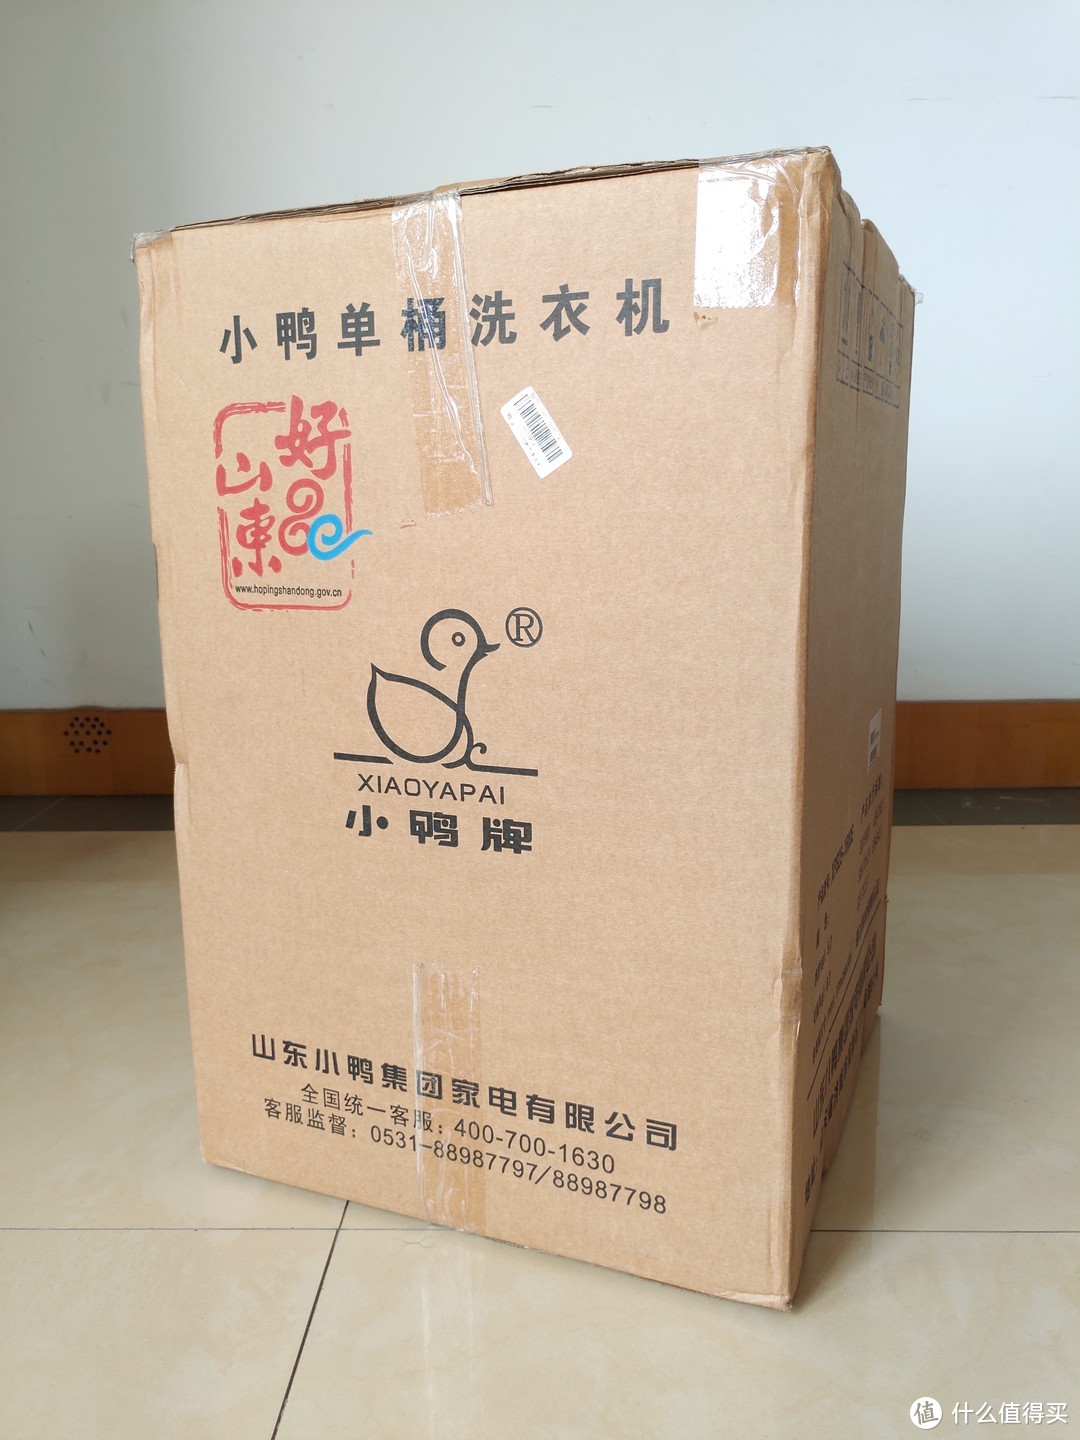 包装箱尺寸为370*390*555mm，毛重6.7kg，一般小轿车后备箱就能放下。